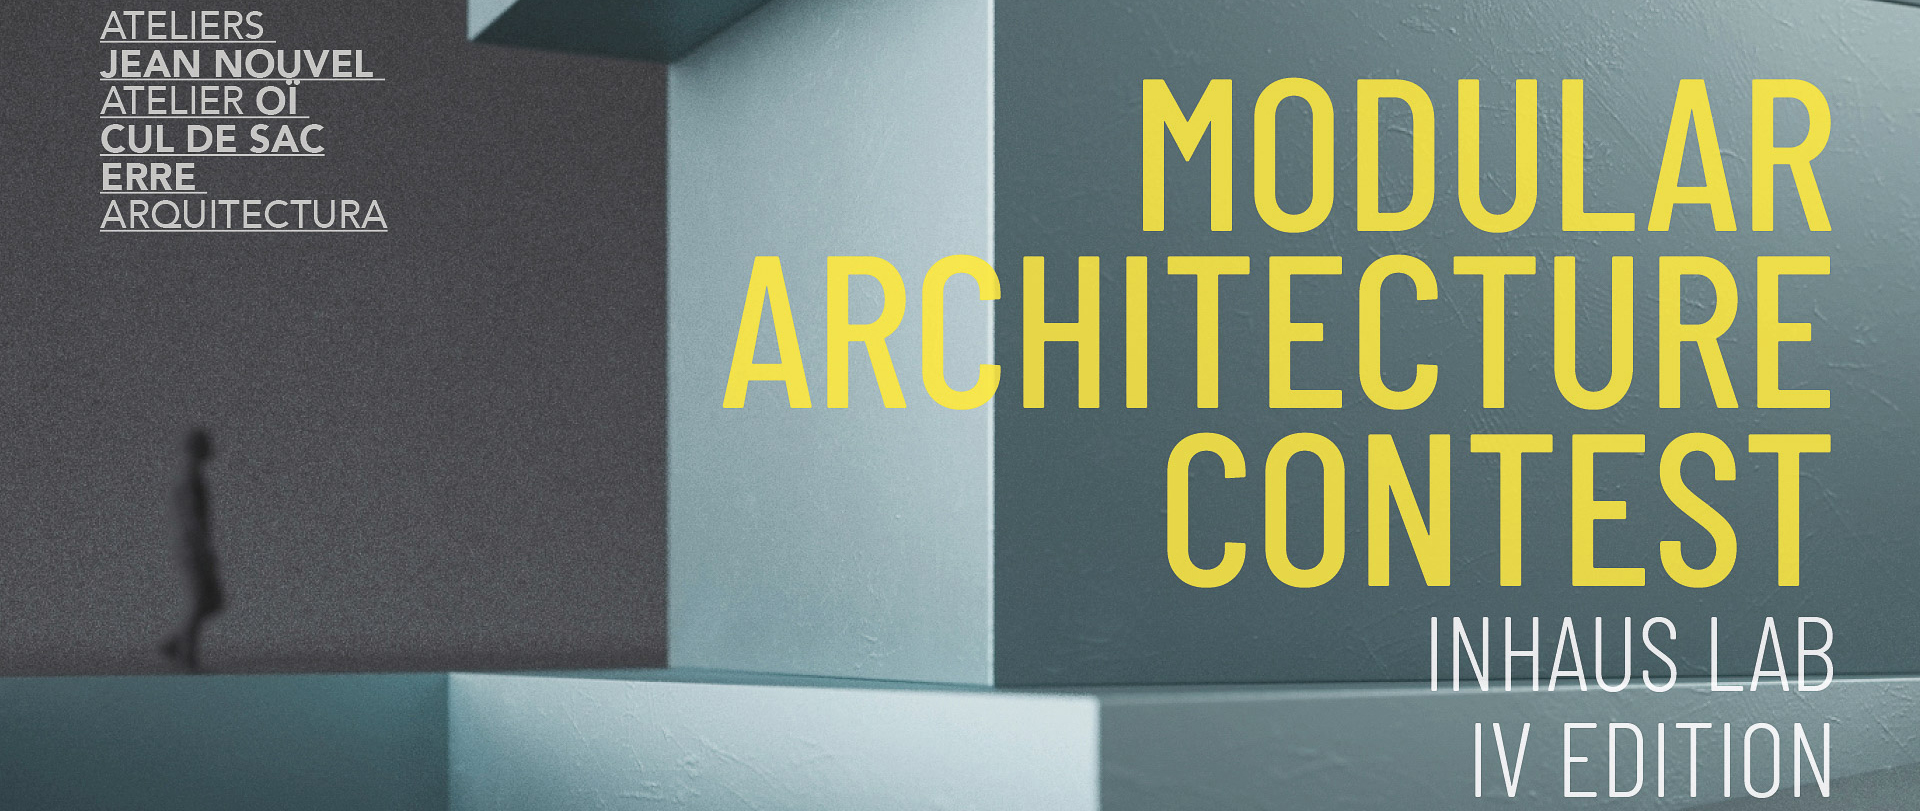 模块化建筑竞赛——“设计您的模块化住宅”